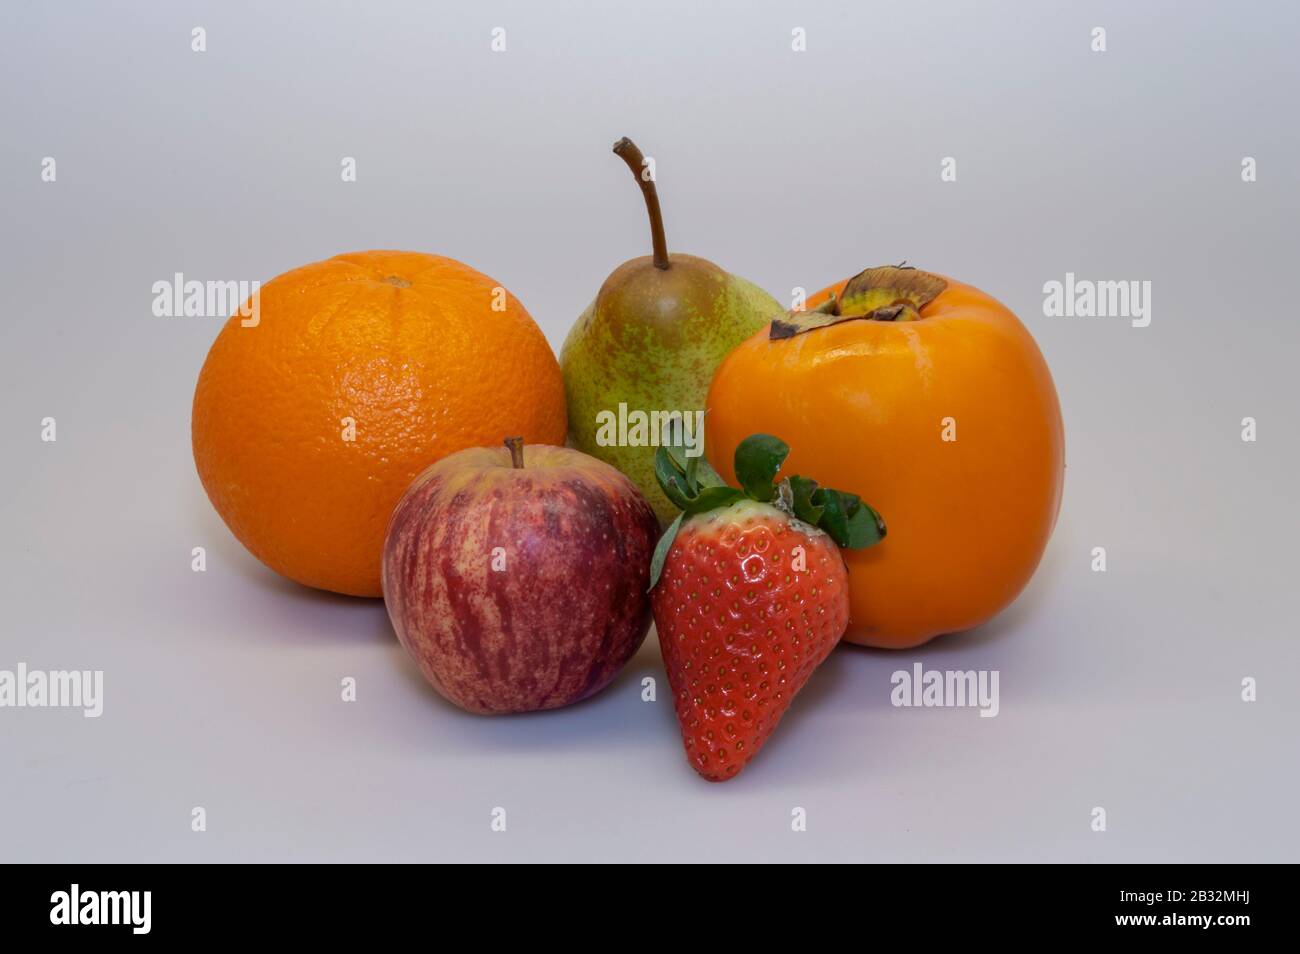 Erdbeere, Apfel, Persimmon, Orange, Pear Rock. Abwechslungsreiche Früchte sind essentiell für eine gesunde und ausgewogene Ernährung. Stockfoto